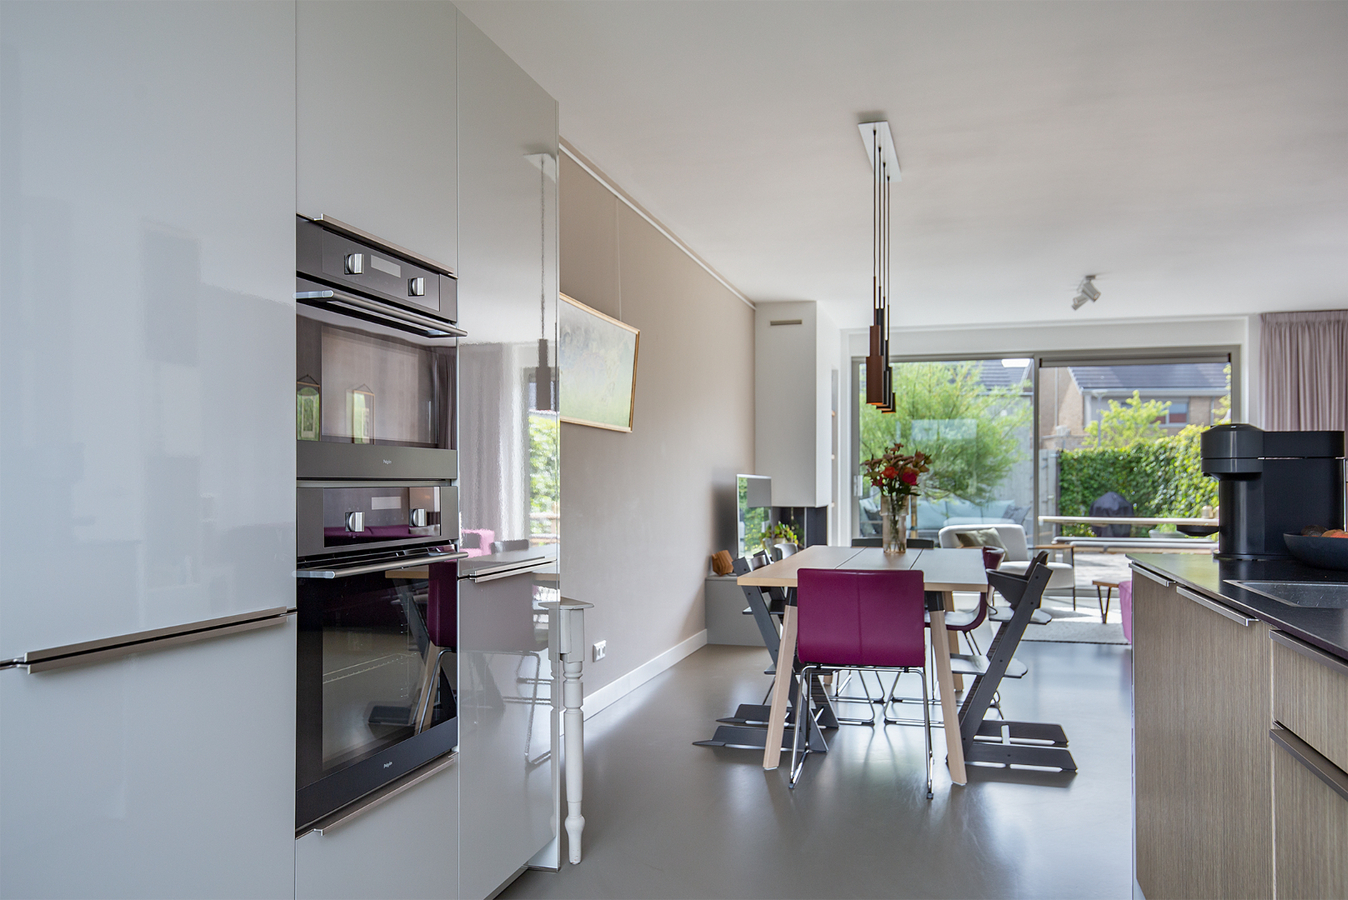 Geweldige energiezuinige en afgewerkte 5-kamer tussenwoning met luxe keuken, badkamer, ruime living en royale tuin! 